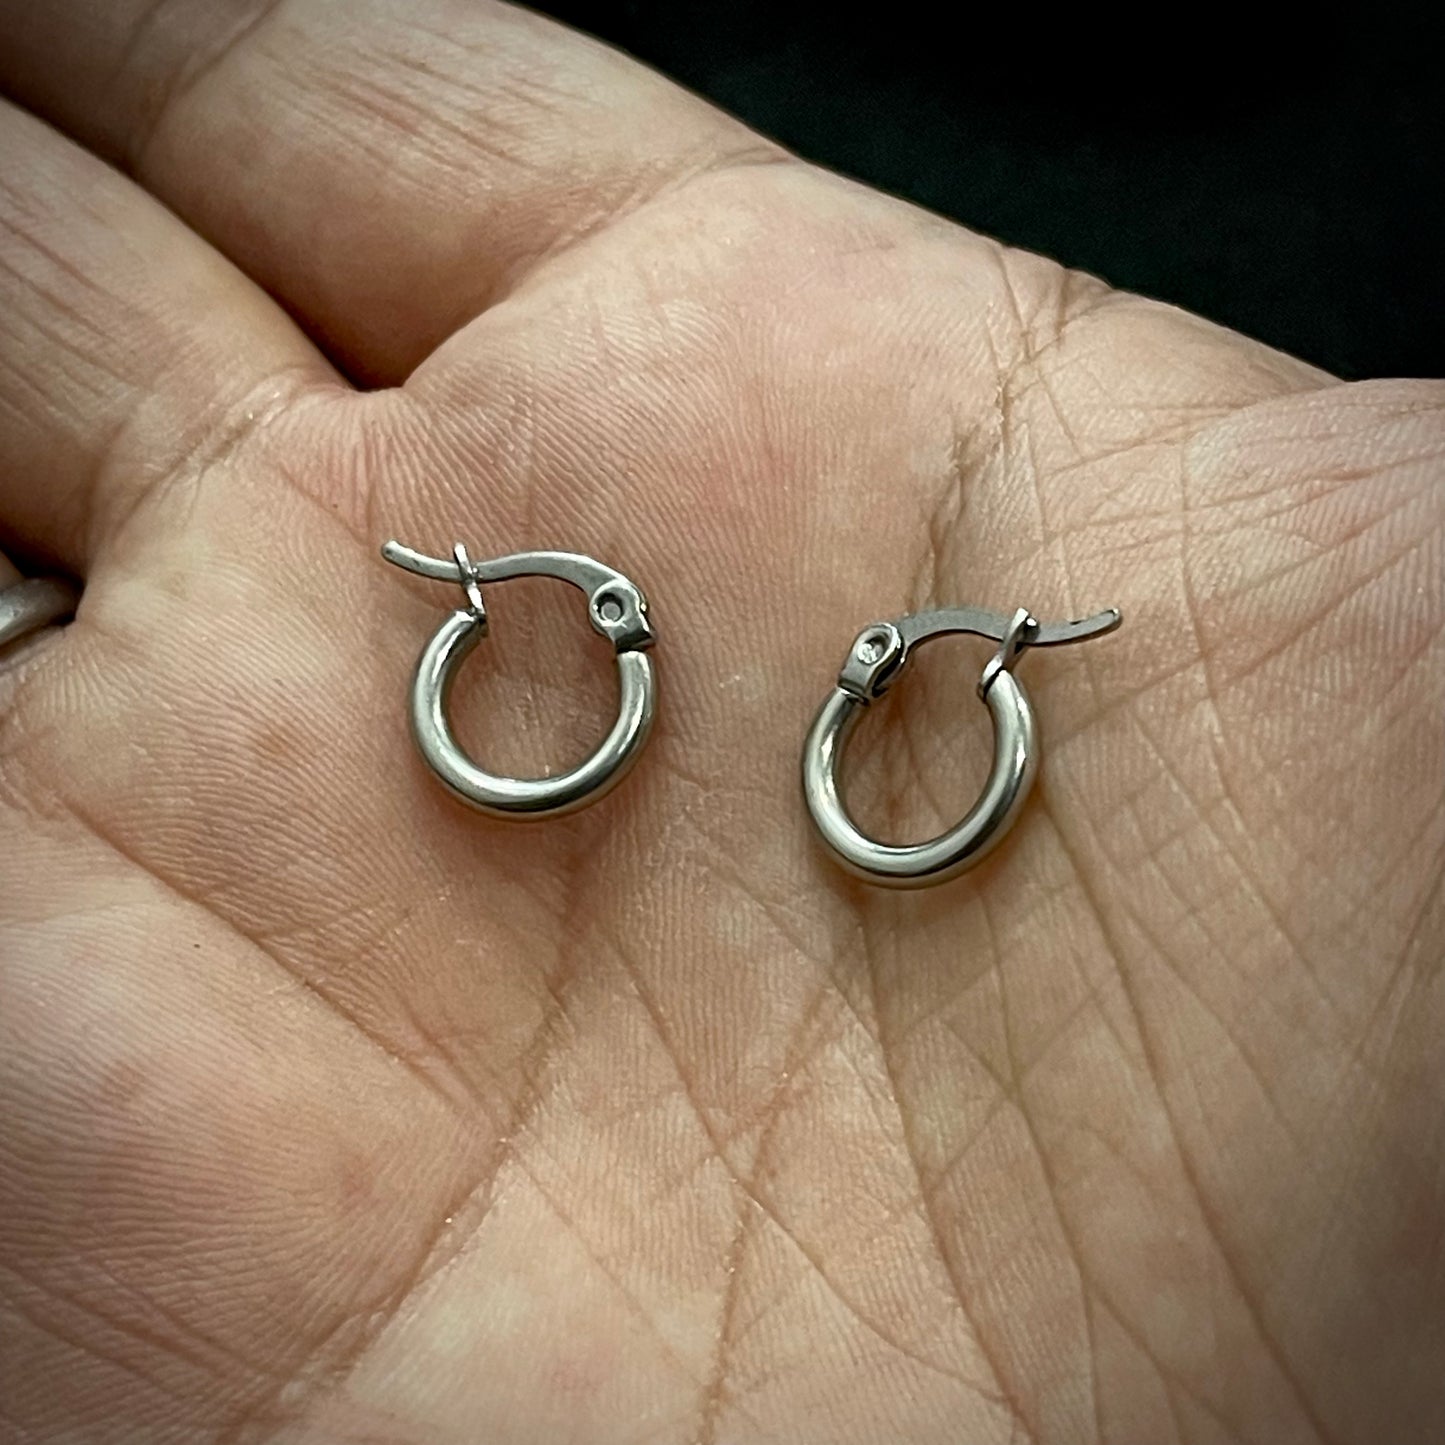 Silver Piercing Simple Bali Stud Earring For Men online in Pakistan